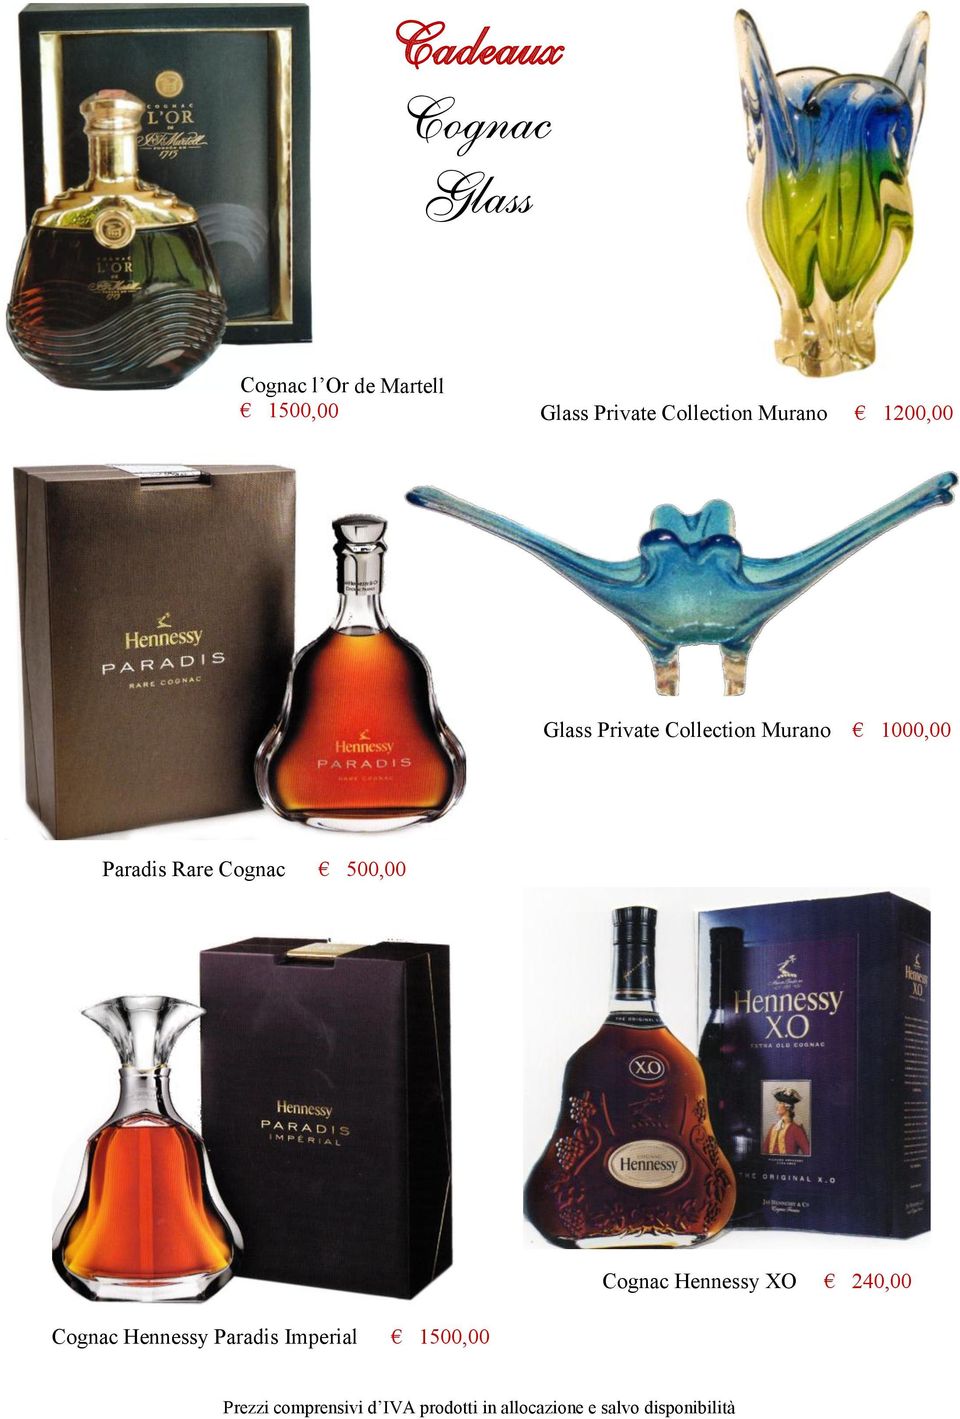 Rare Cognac 500,00 Cognac Hennessy XO 240,00 Cognac Hennessy Paradis